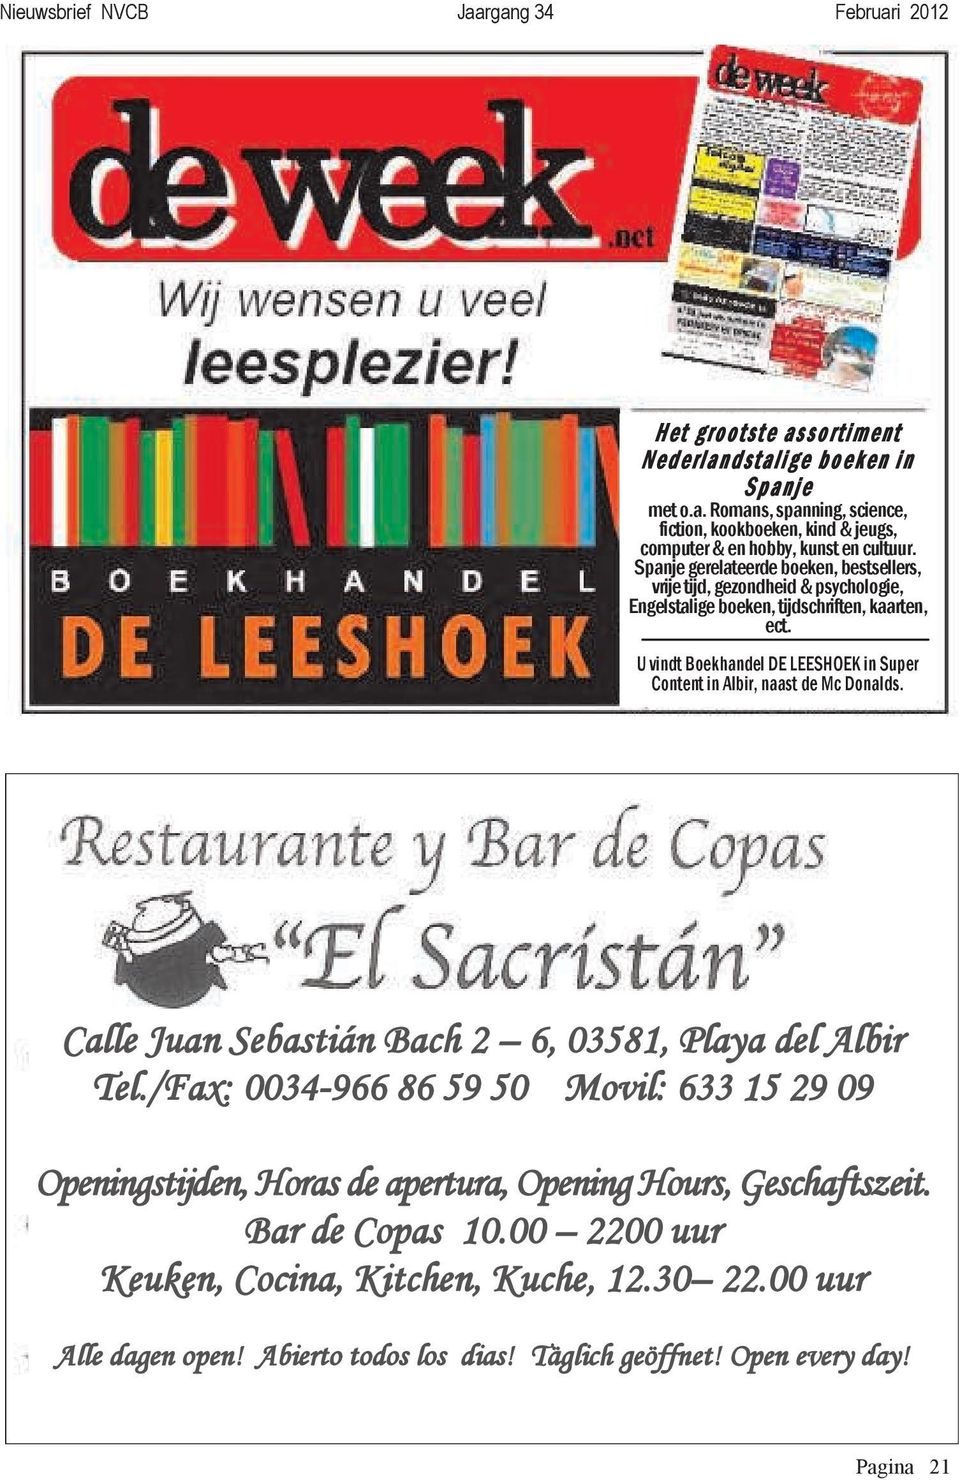 U vindt Boekhandel DE LEESHOEK in Super Content in Albir, naast de Mc Donalds. Calle Juan Sebastián Bach 2 6, 03581, Playa del Albir Tel.